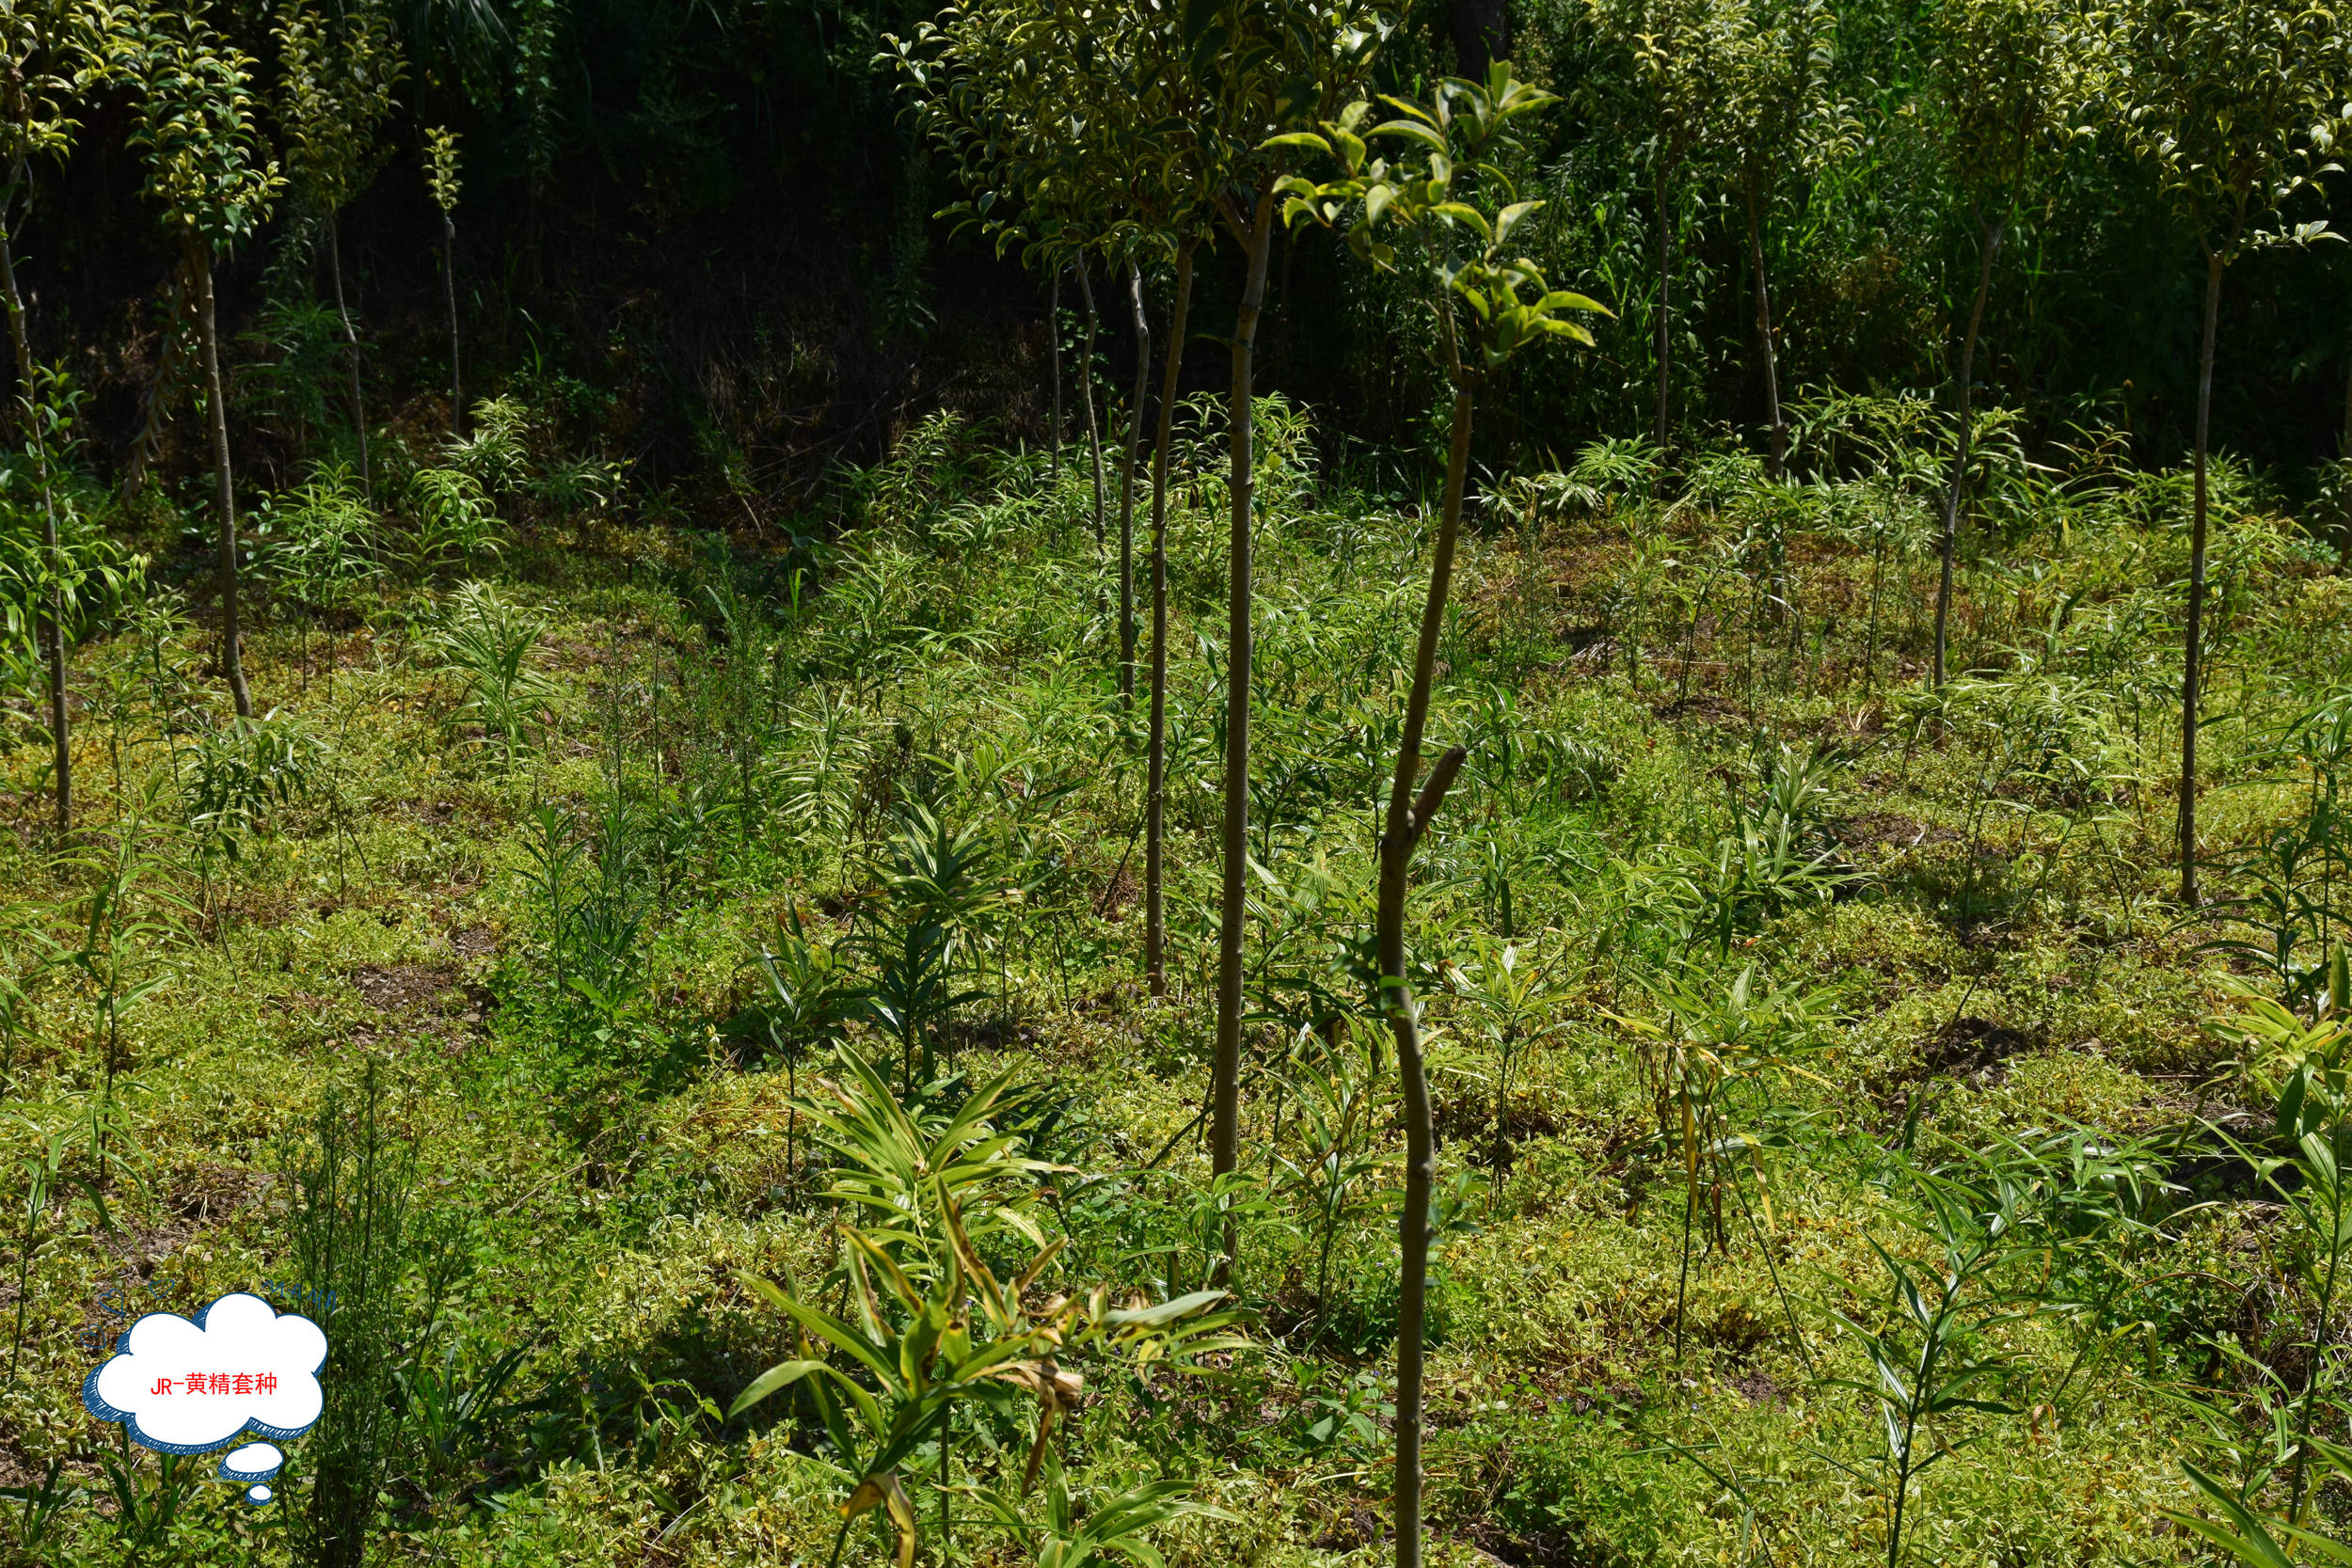 林药间作林下种植药材的几个节点环节要了解